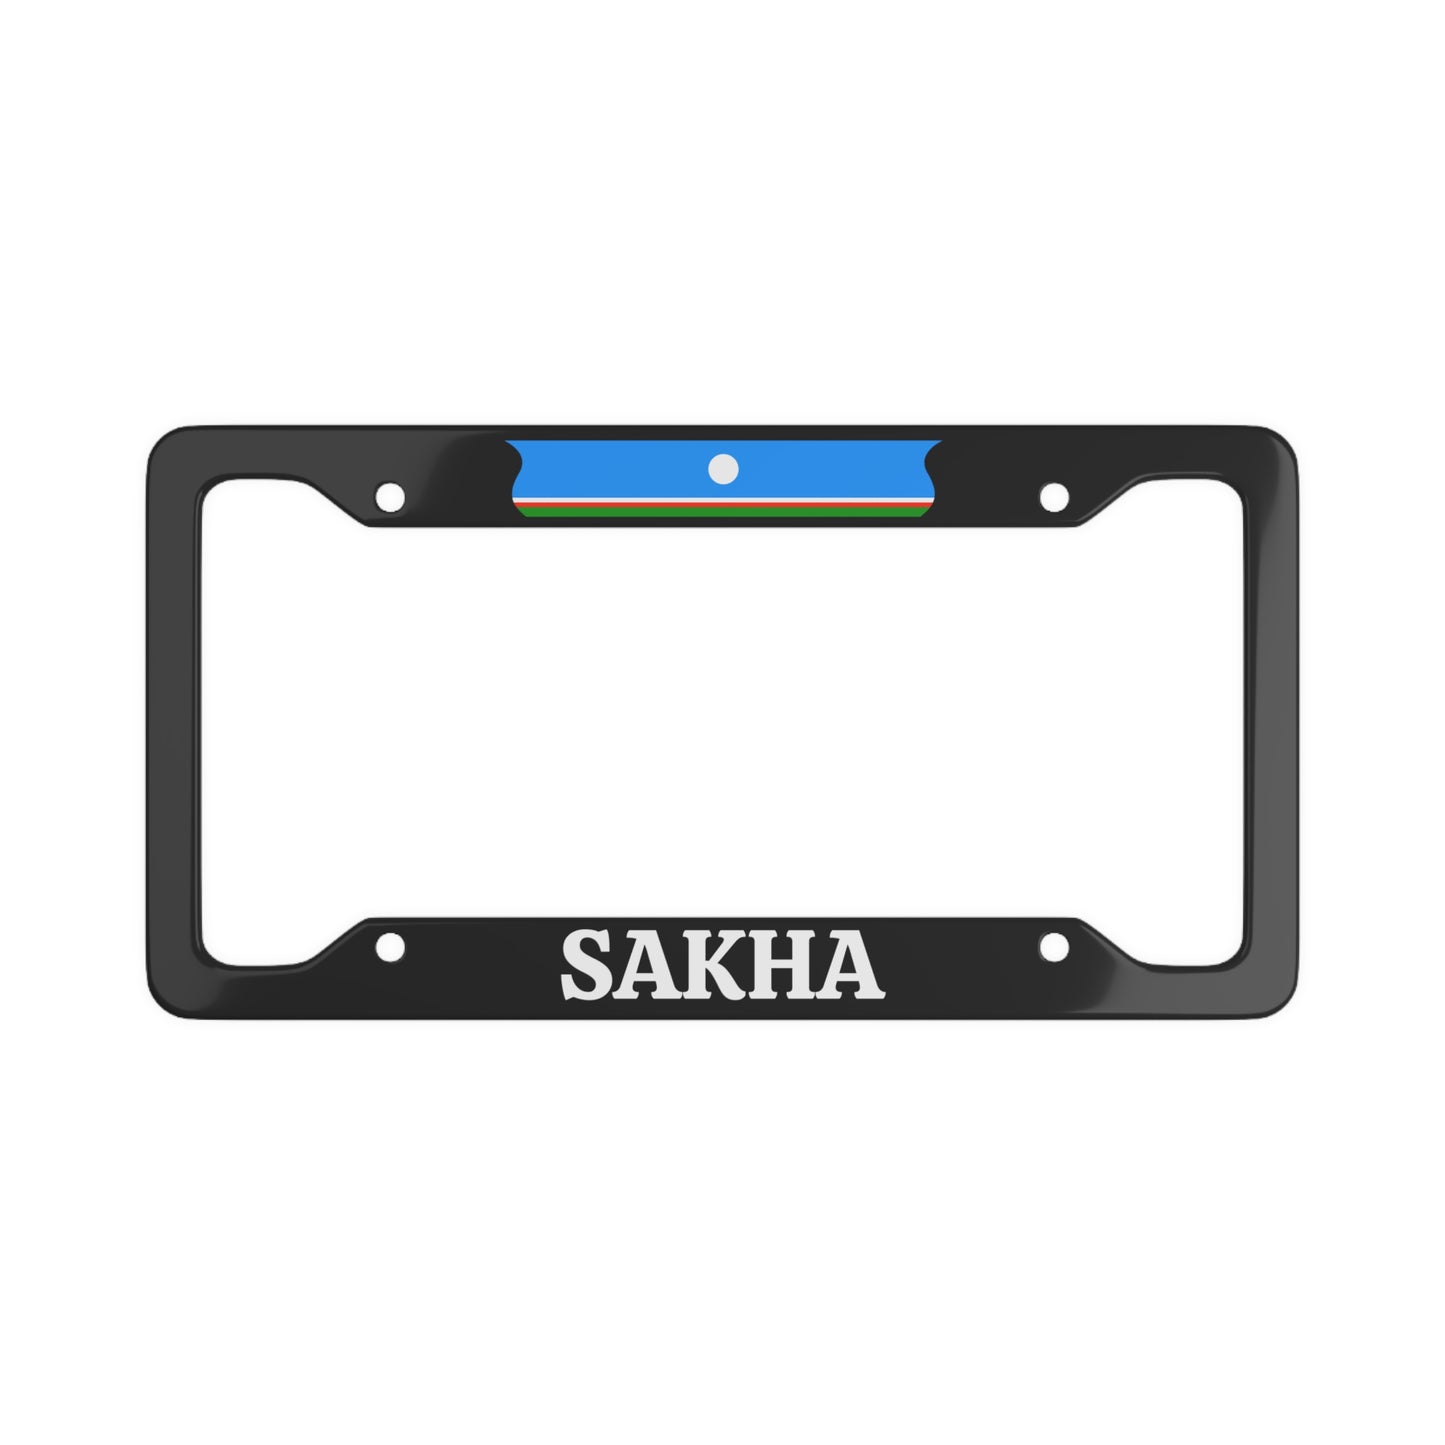 Sakha License Plate Frame